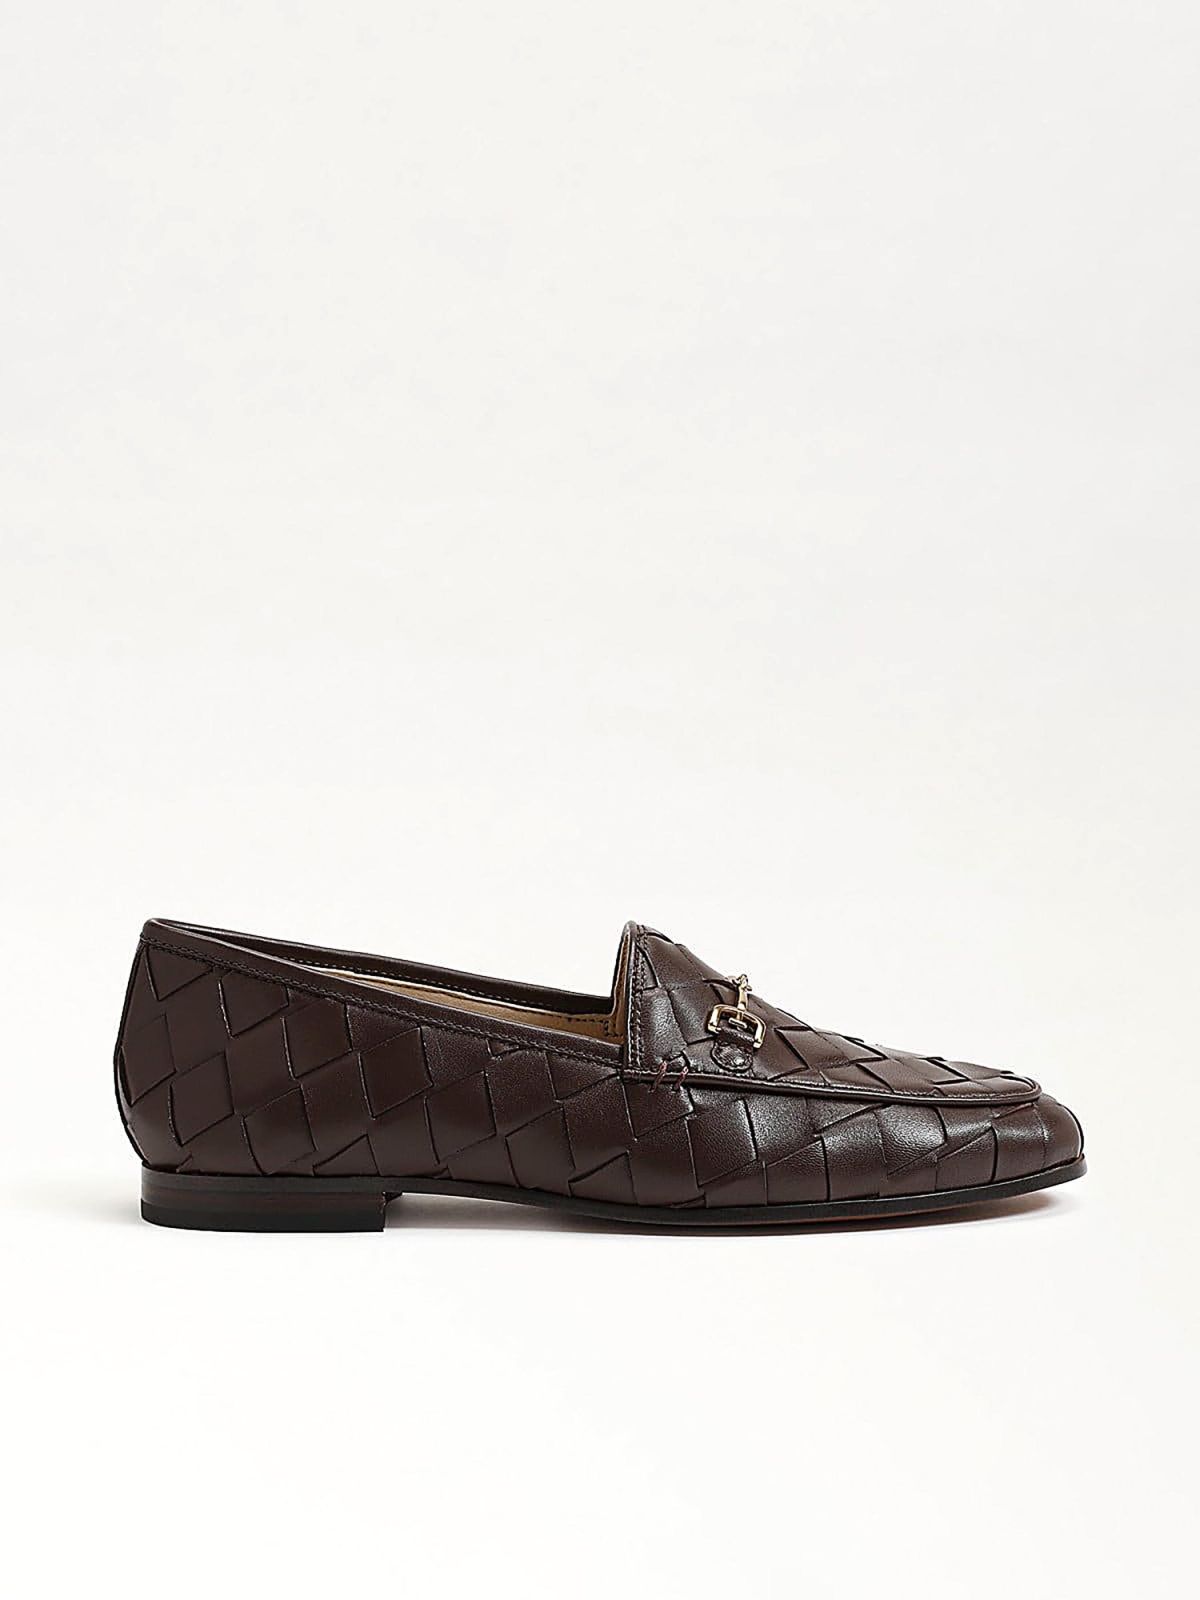  נעלי מוקסין עור בטקסטורה / נשים של SAM EDELMAN